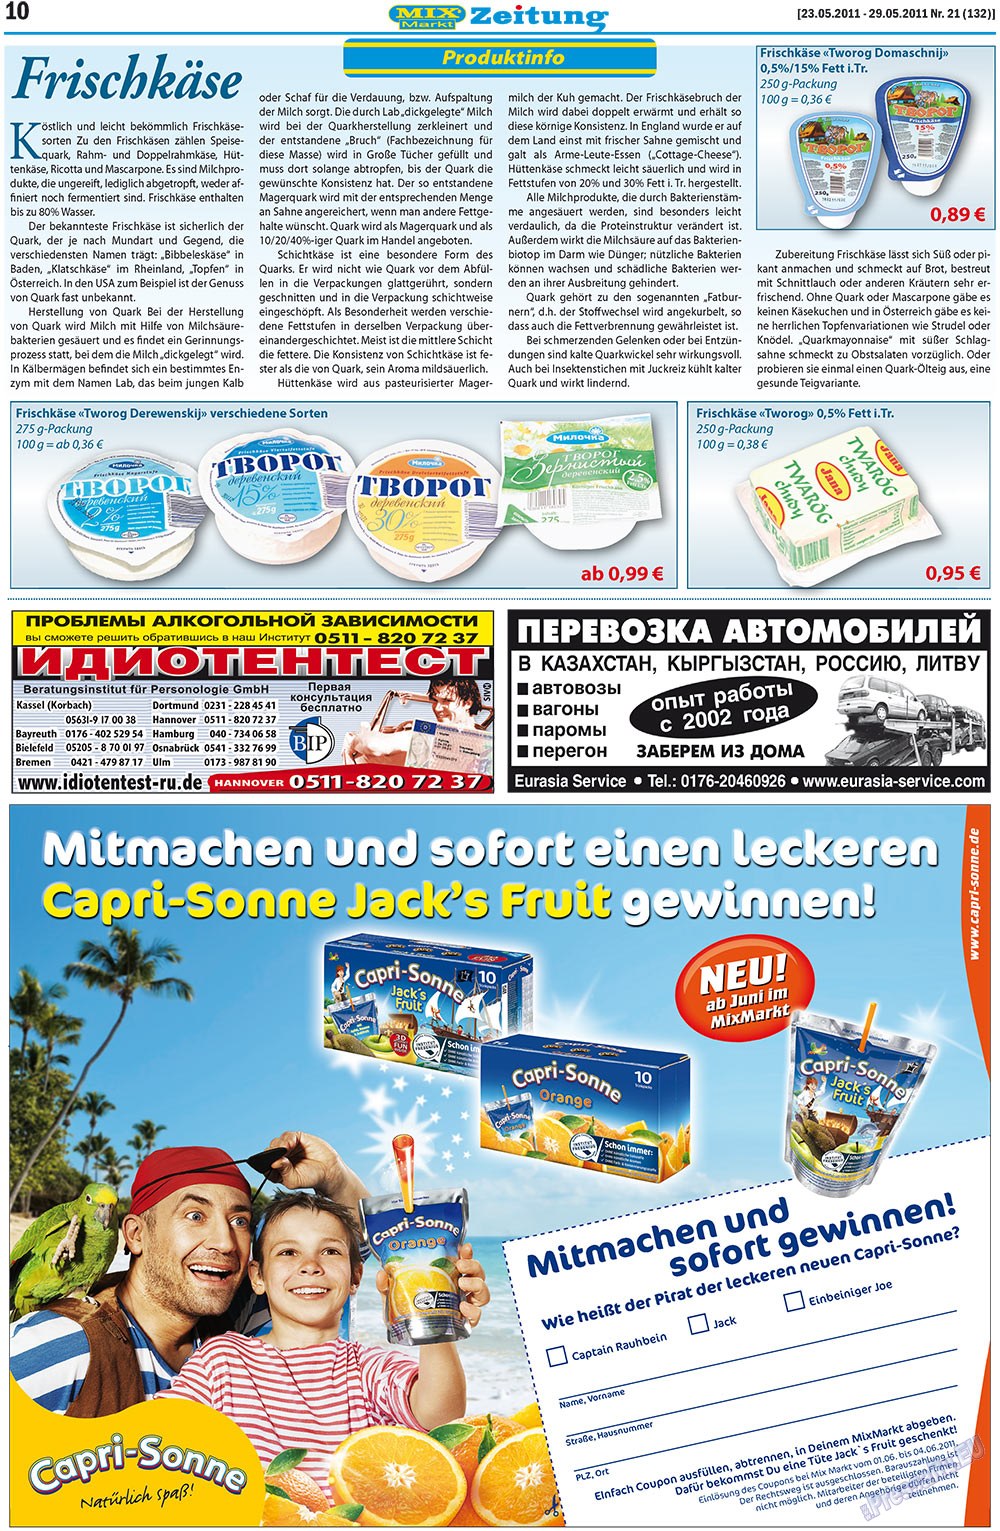 MIX-Markt Zeitung, газета. 2011 №21 стр.10